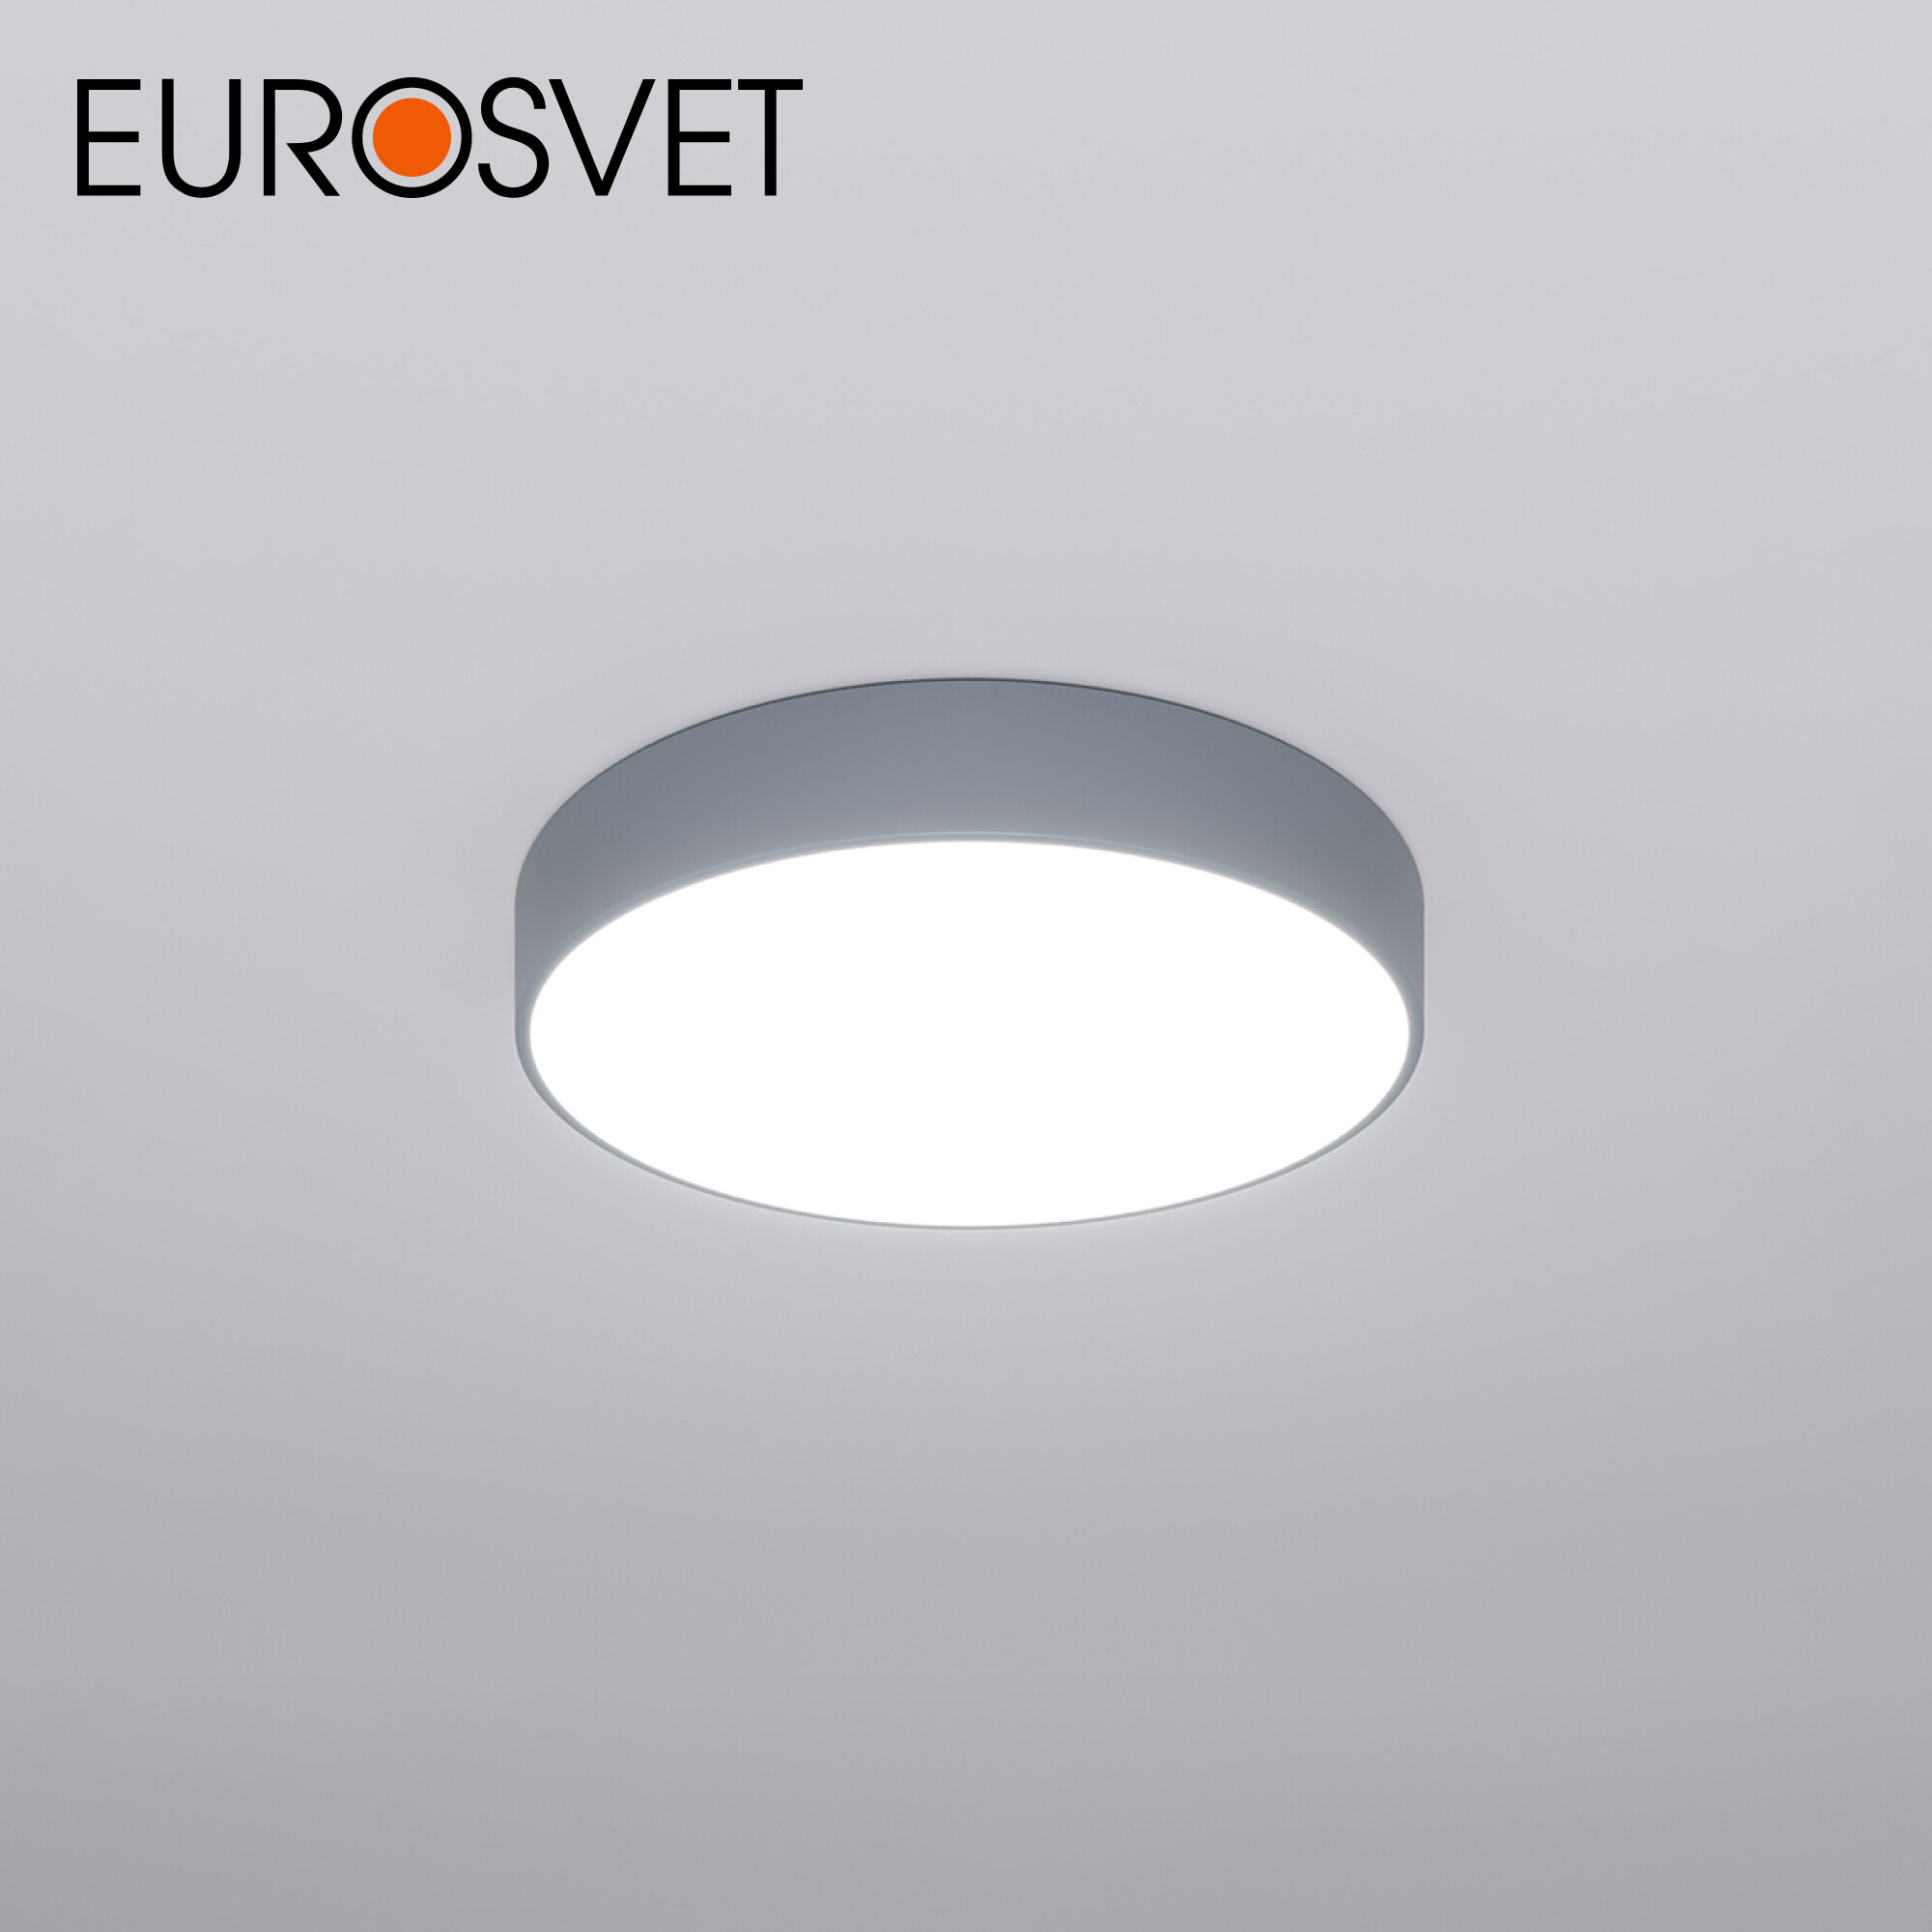 Люстра / Потолочный светодиодный светильник с пультом управления Eurosvet Entire 90319/1, 3300 / 4200 / 6500 К, цвет серый, IP20